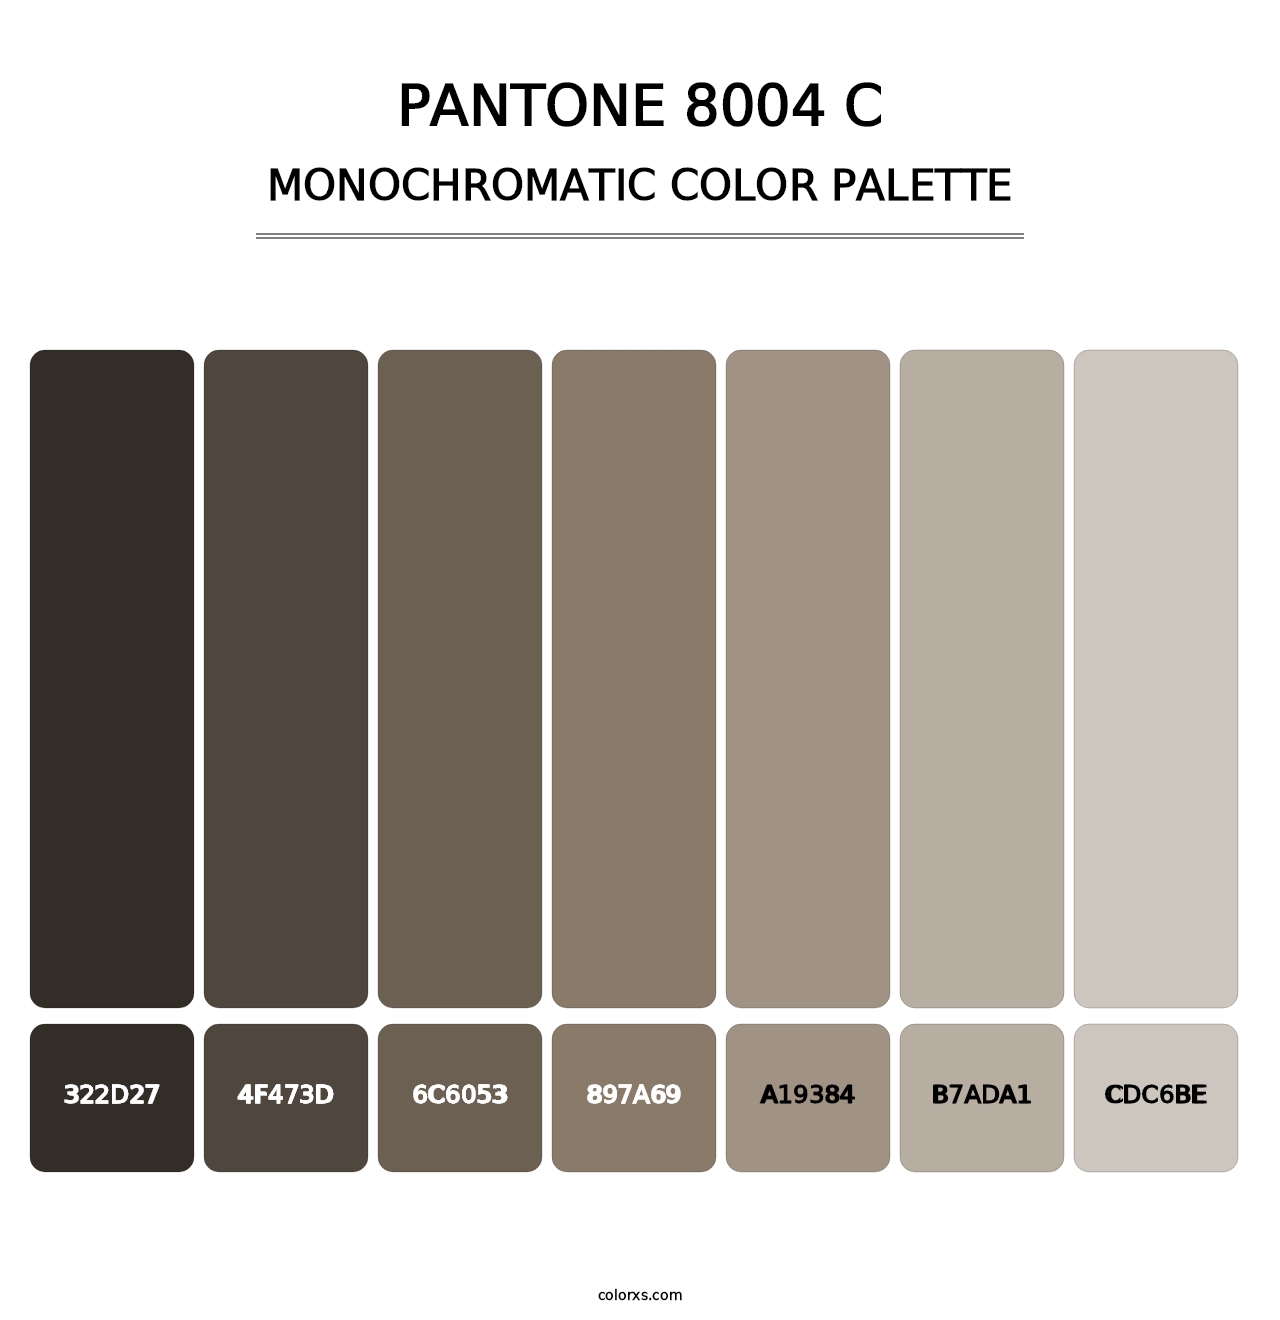 PANTONE 8004 C - Monochromatic Color Palette